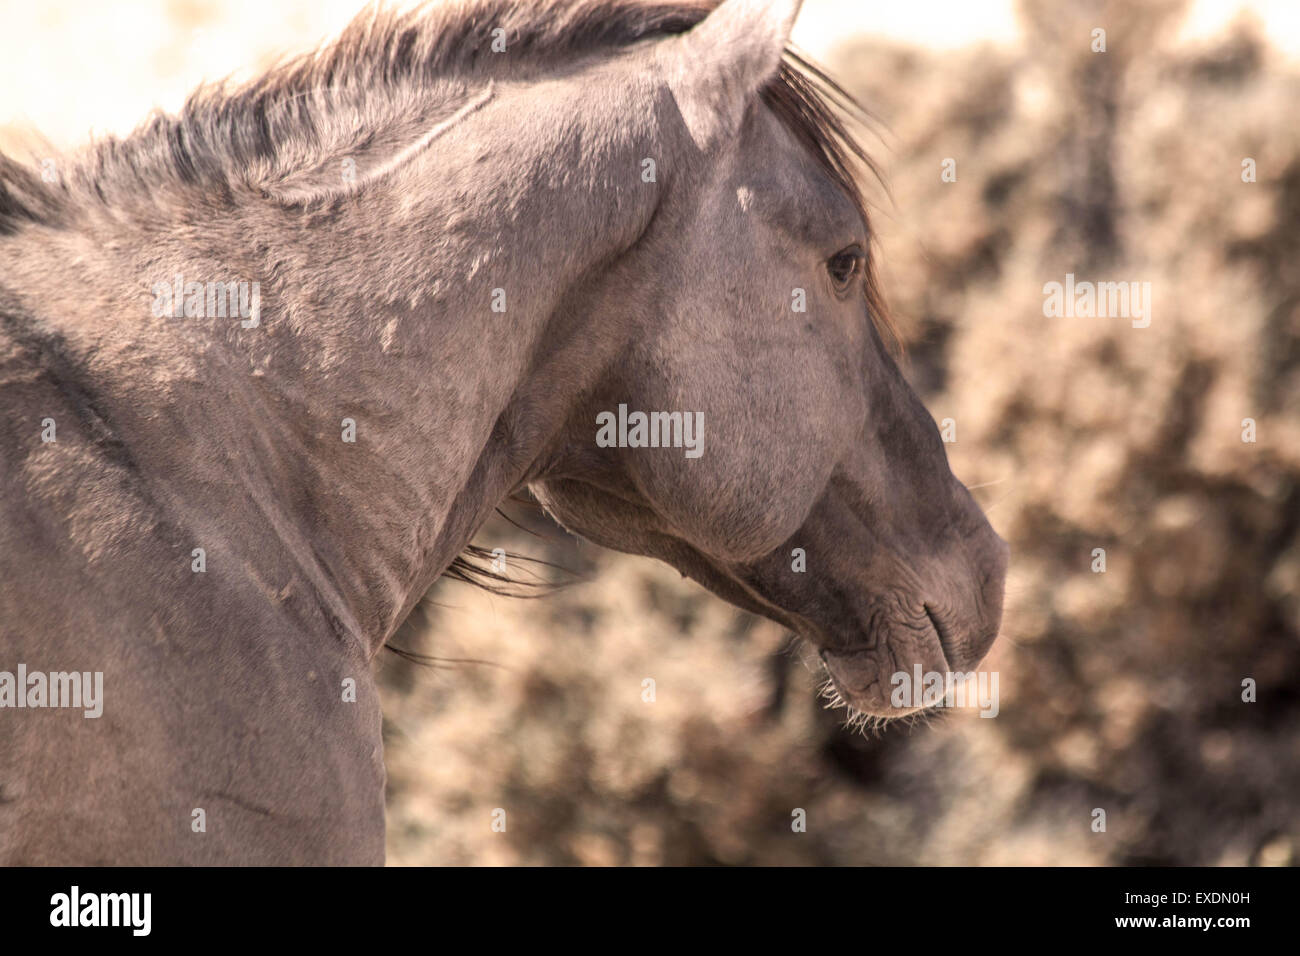 Wild Horse, Pryor Mountain Wild Horse Range, Montana/Wyoming. Stock Photo